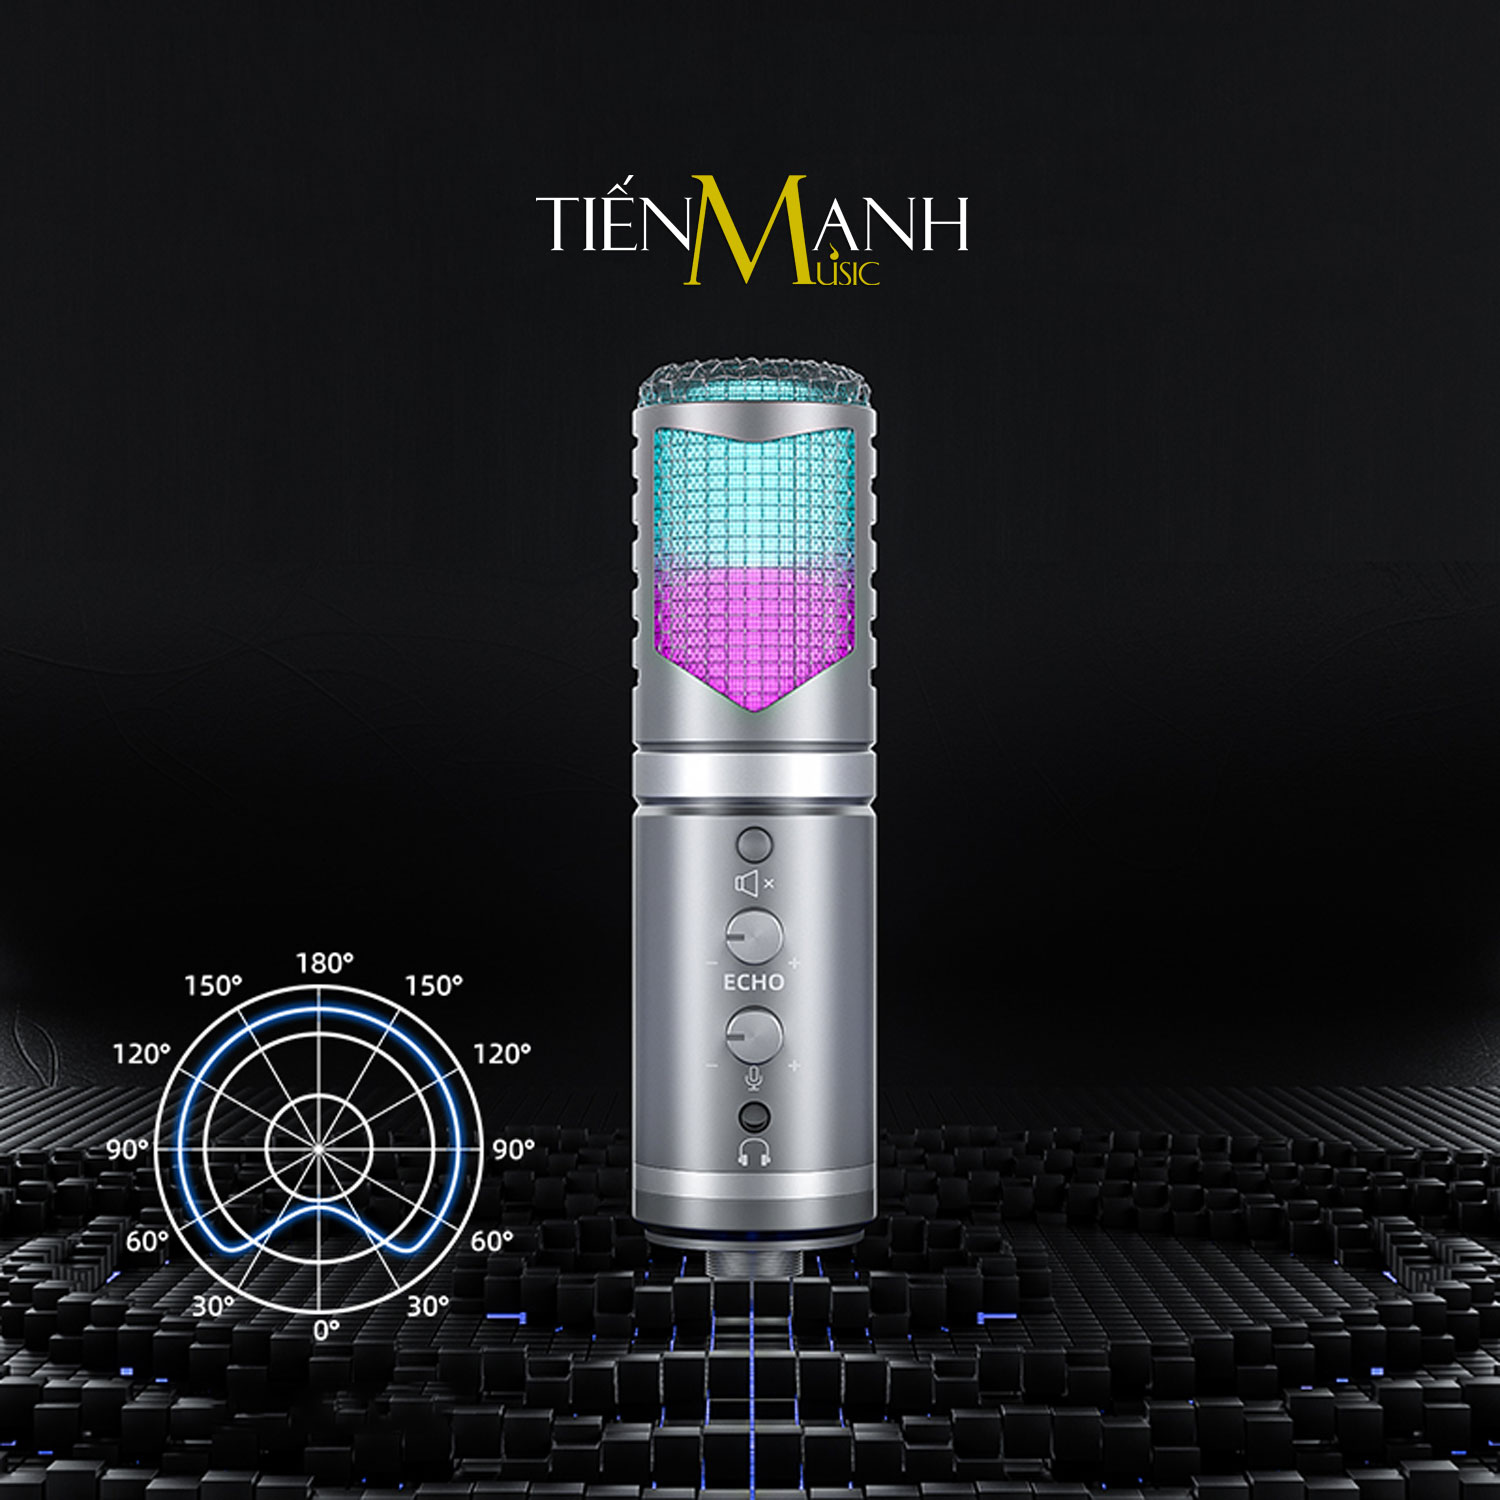 [Có Echo Vang] Micro USB Đèn Led RGB Dr.Mic DR9 - Mic Thu Âm DR-09 Microphone Cardioid DR09 Podcast, Livestream, Gaming Hàng Chính Hãng - Kèm Móng Gẩy DreamMaker